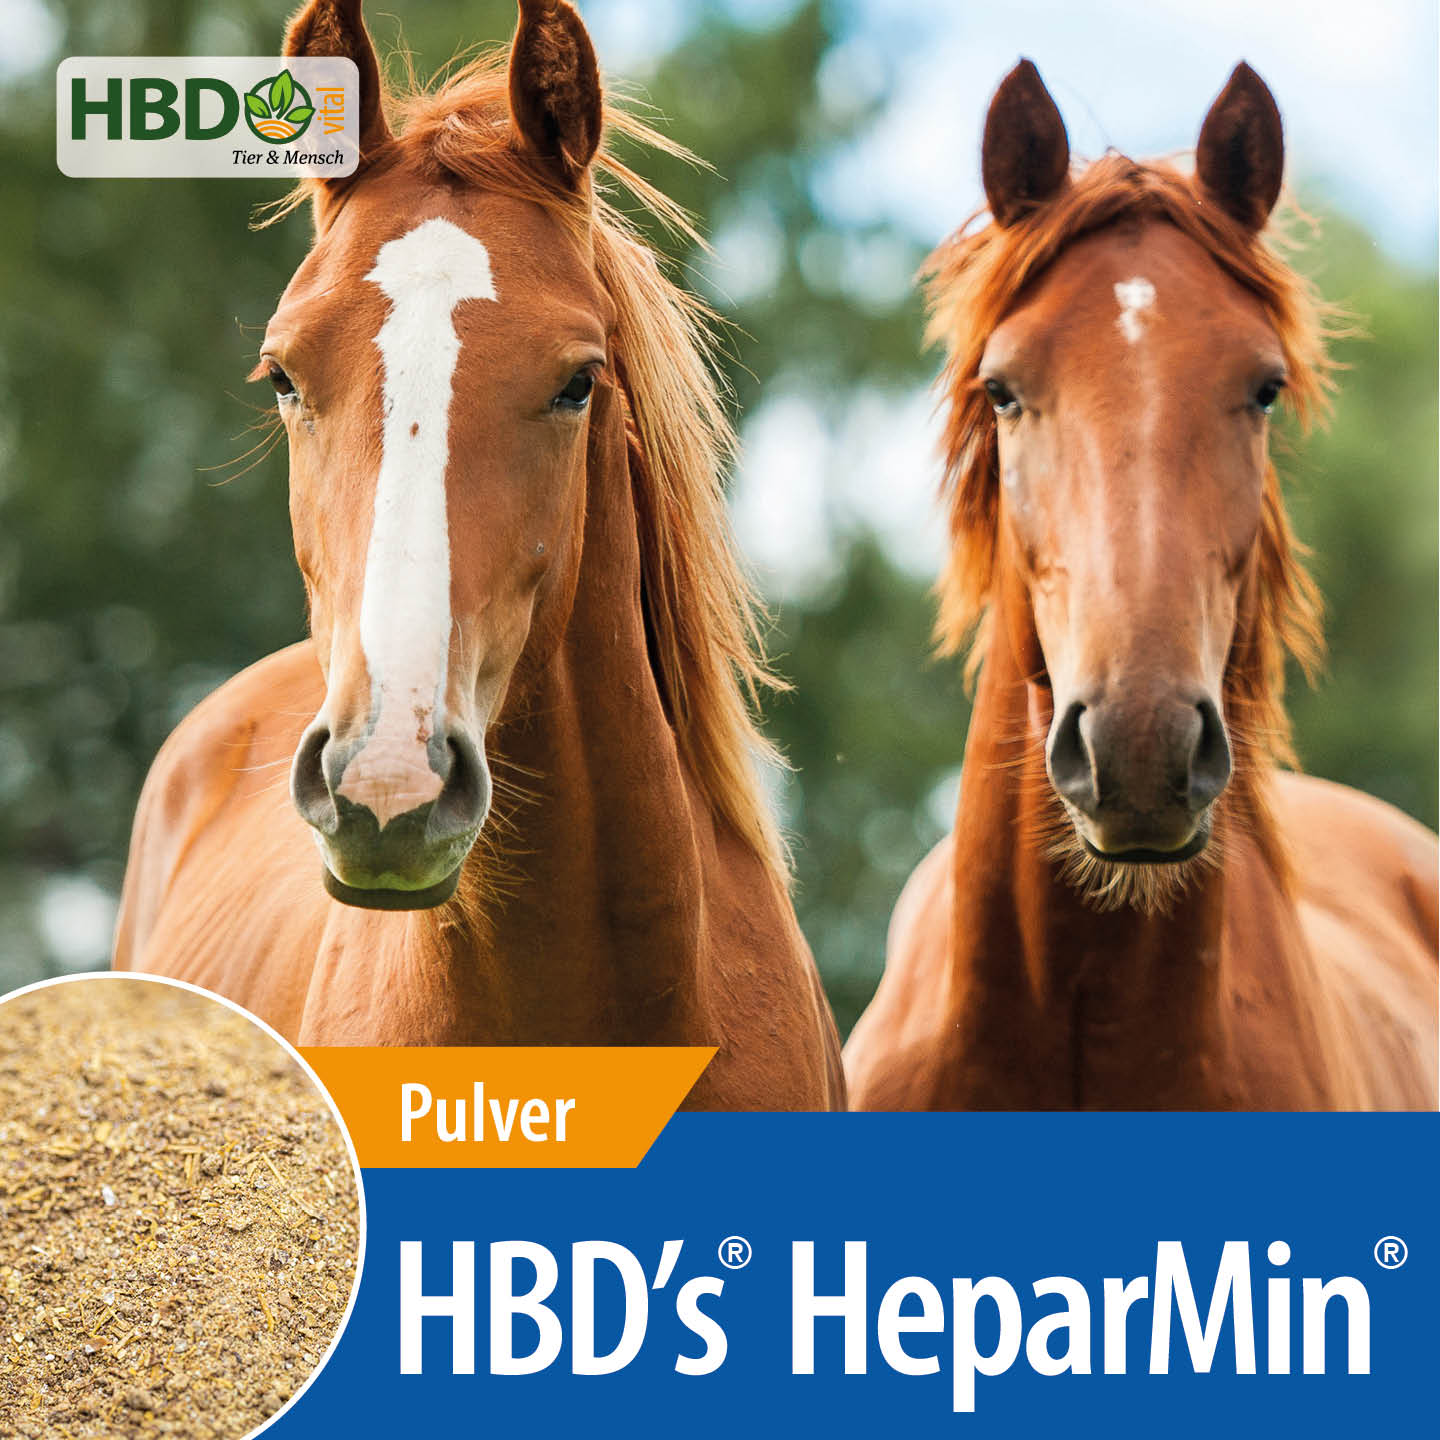 Shopbild für HBD’s HeparMin - Das Bild zeigt den Produktnamen sowie den Hinweis, dass es sich um ein Pulver handelt. Zwei braune Pferde sind zu sehen.